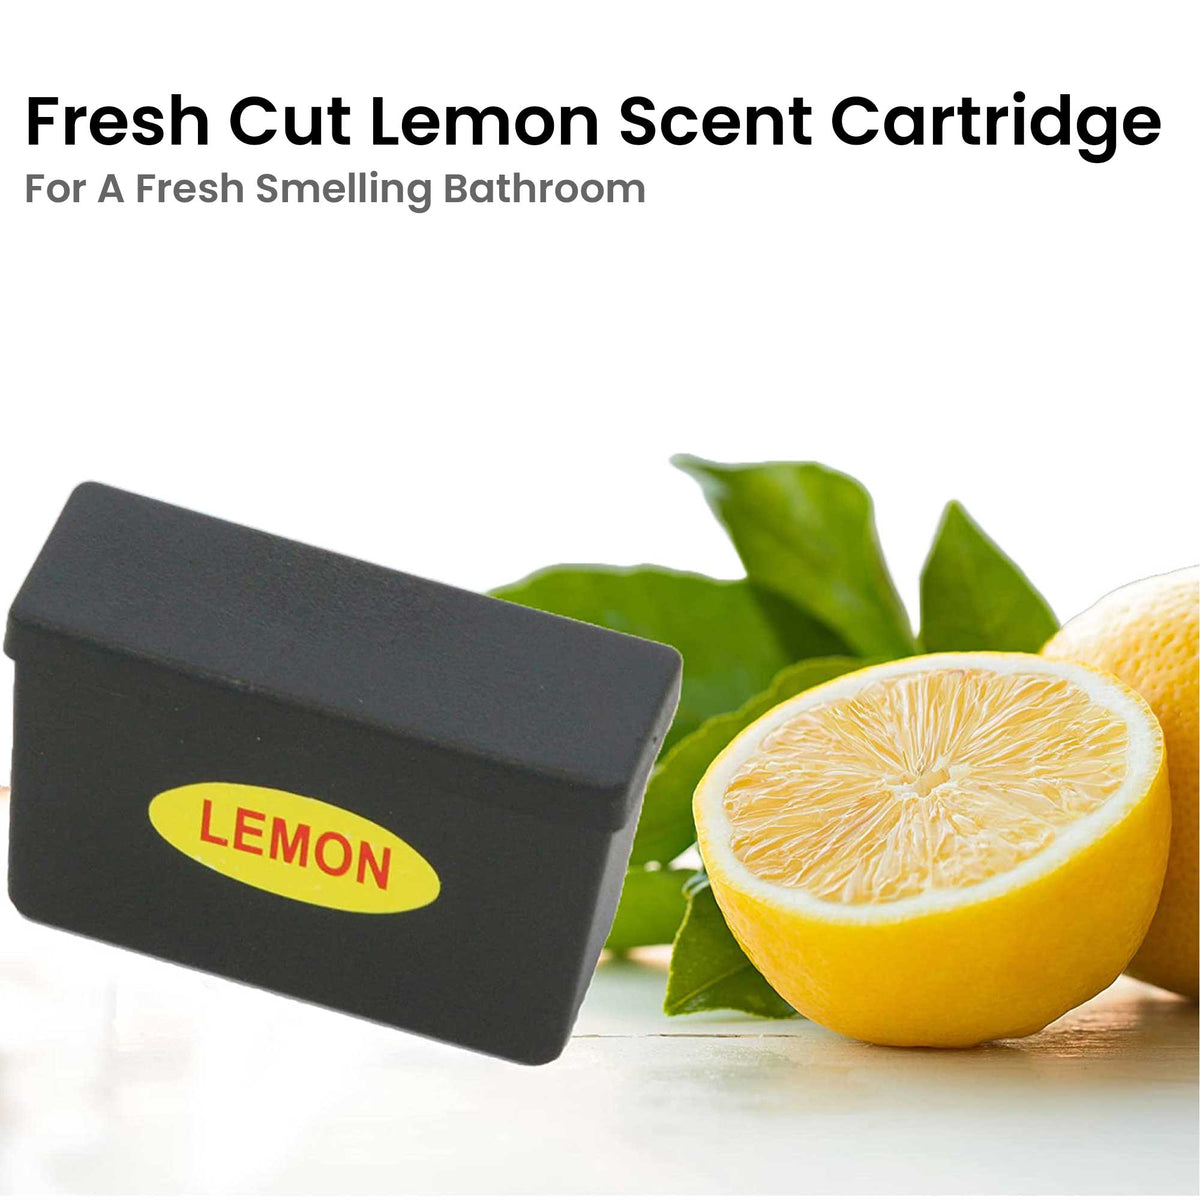 2.5 Gallon / 9.5 Liter Stainless Steel Sensor Bathroom Trash Can (2-Pack) fresh cut lemon fragrance cartridge